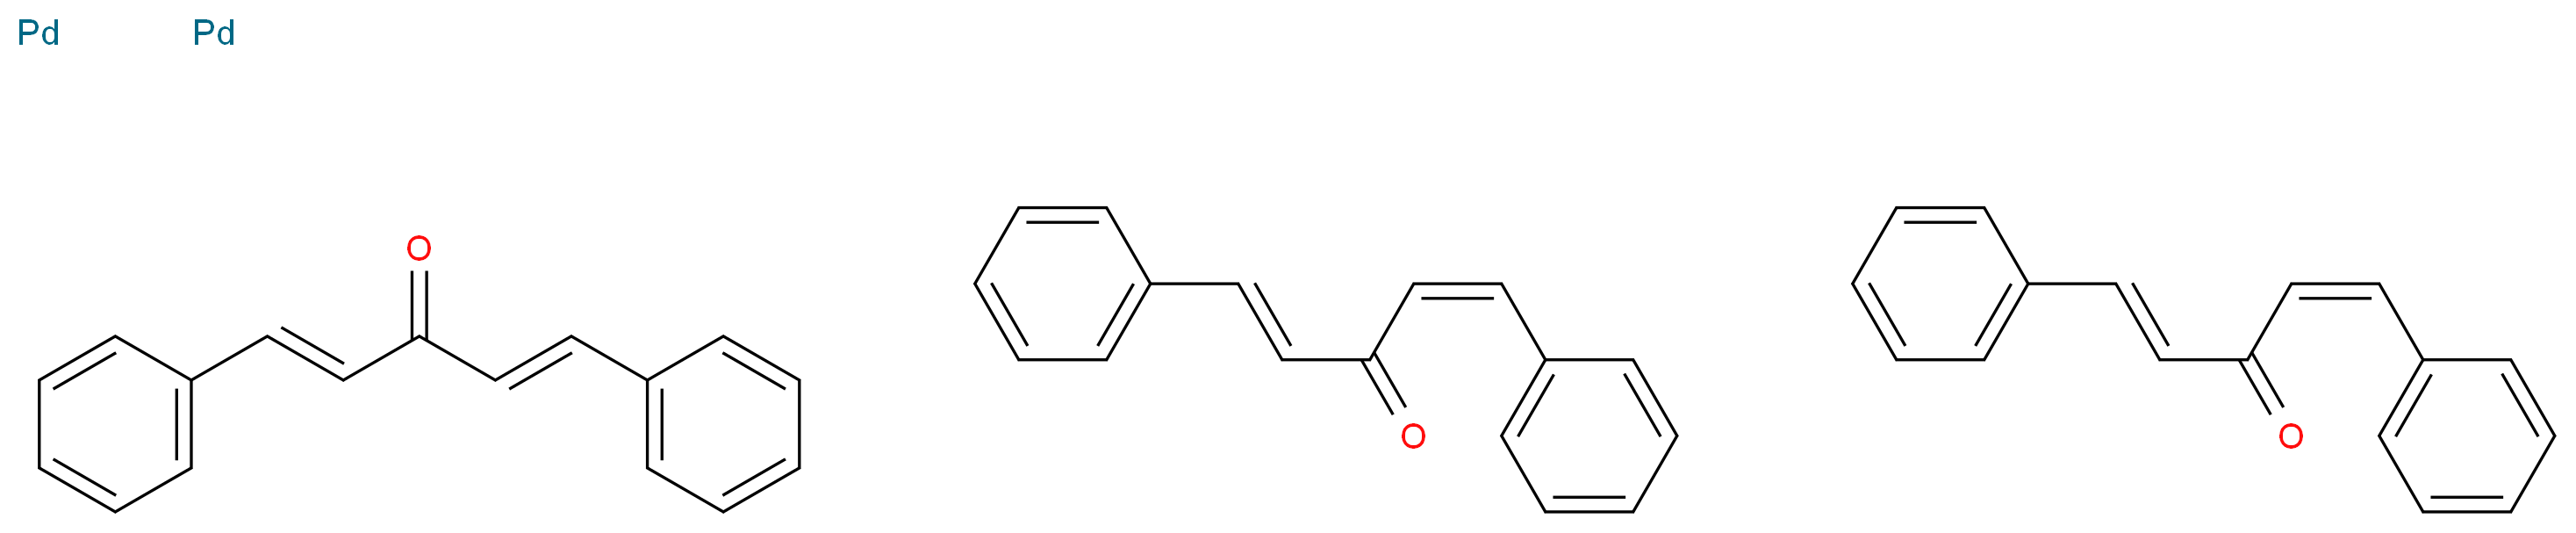 (1E,4E)-1,5-diphenylpenta-1,4-dien-3-one bis((1Z,4E)-1,5-diphenylpenta-1,4-dien-3-one) dipalladium_分子结构_CAS_51364-51-3